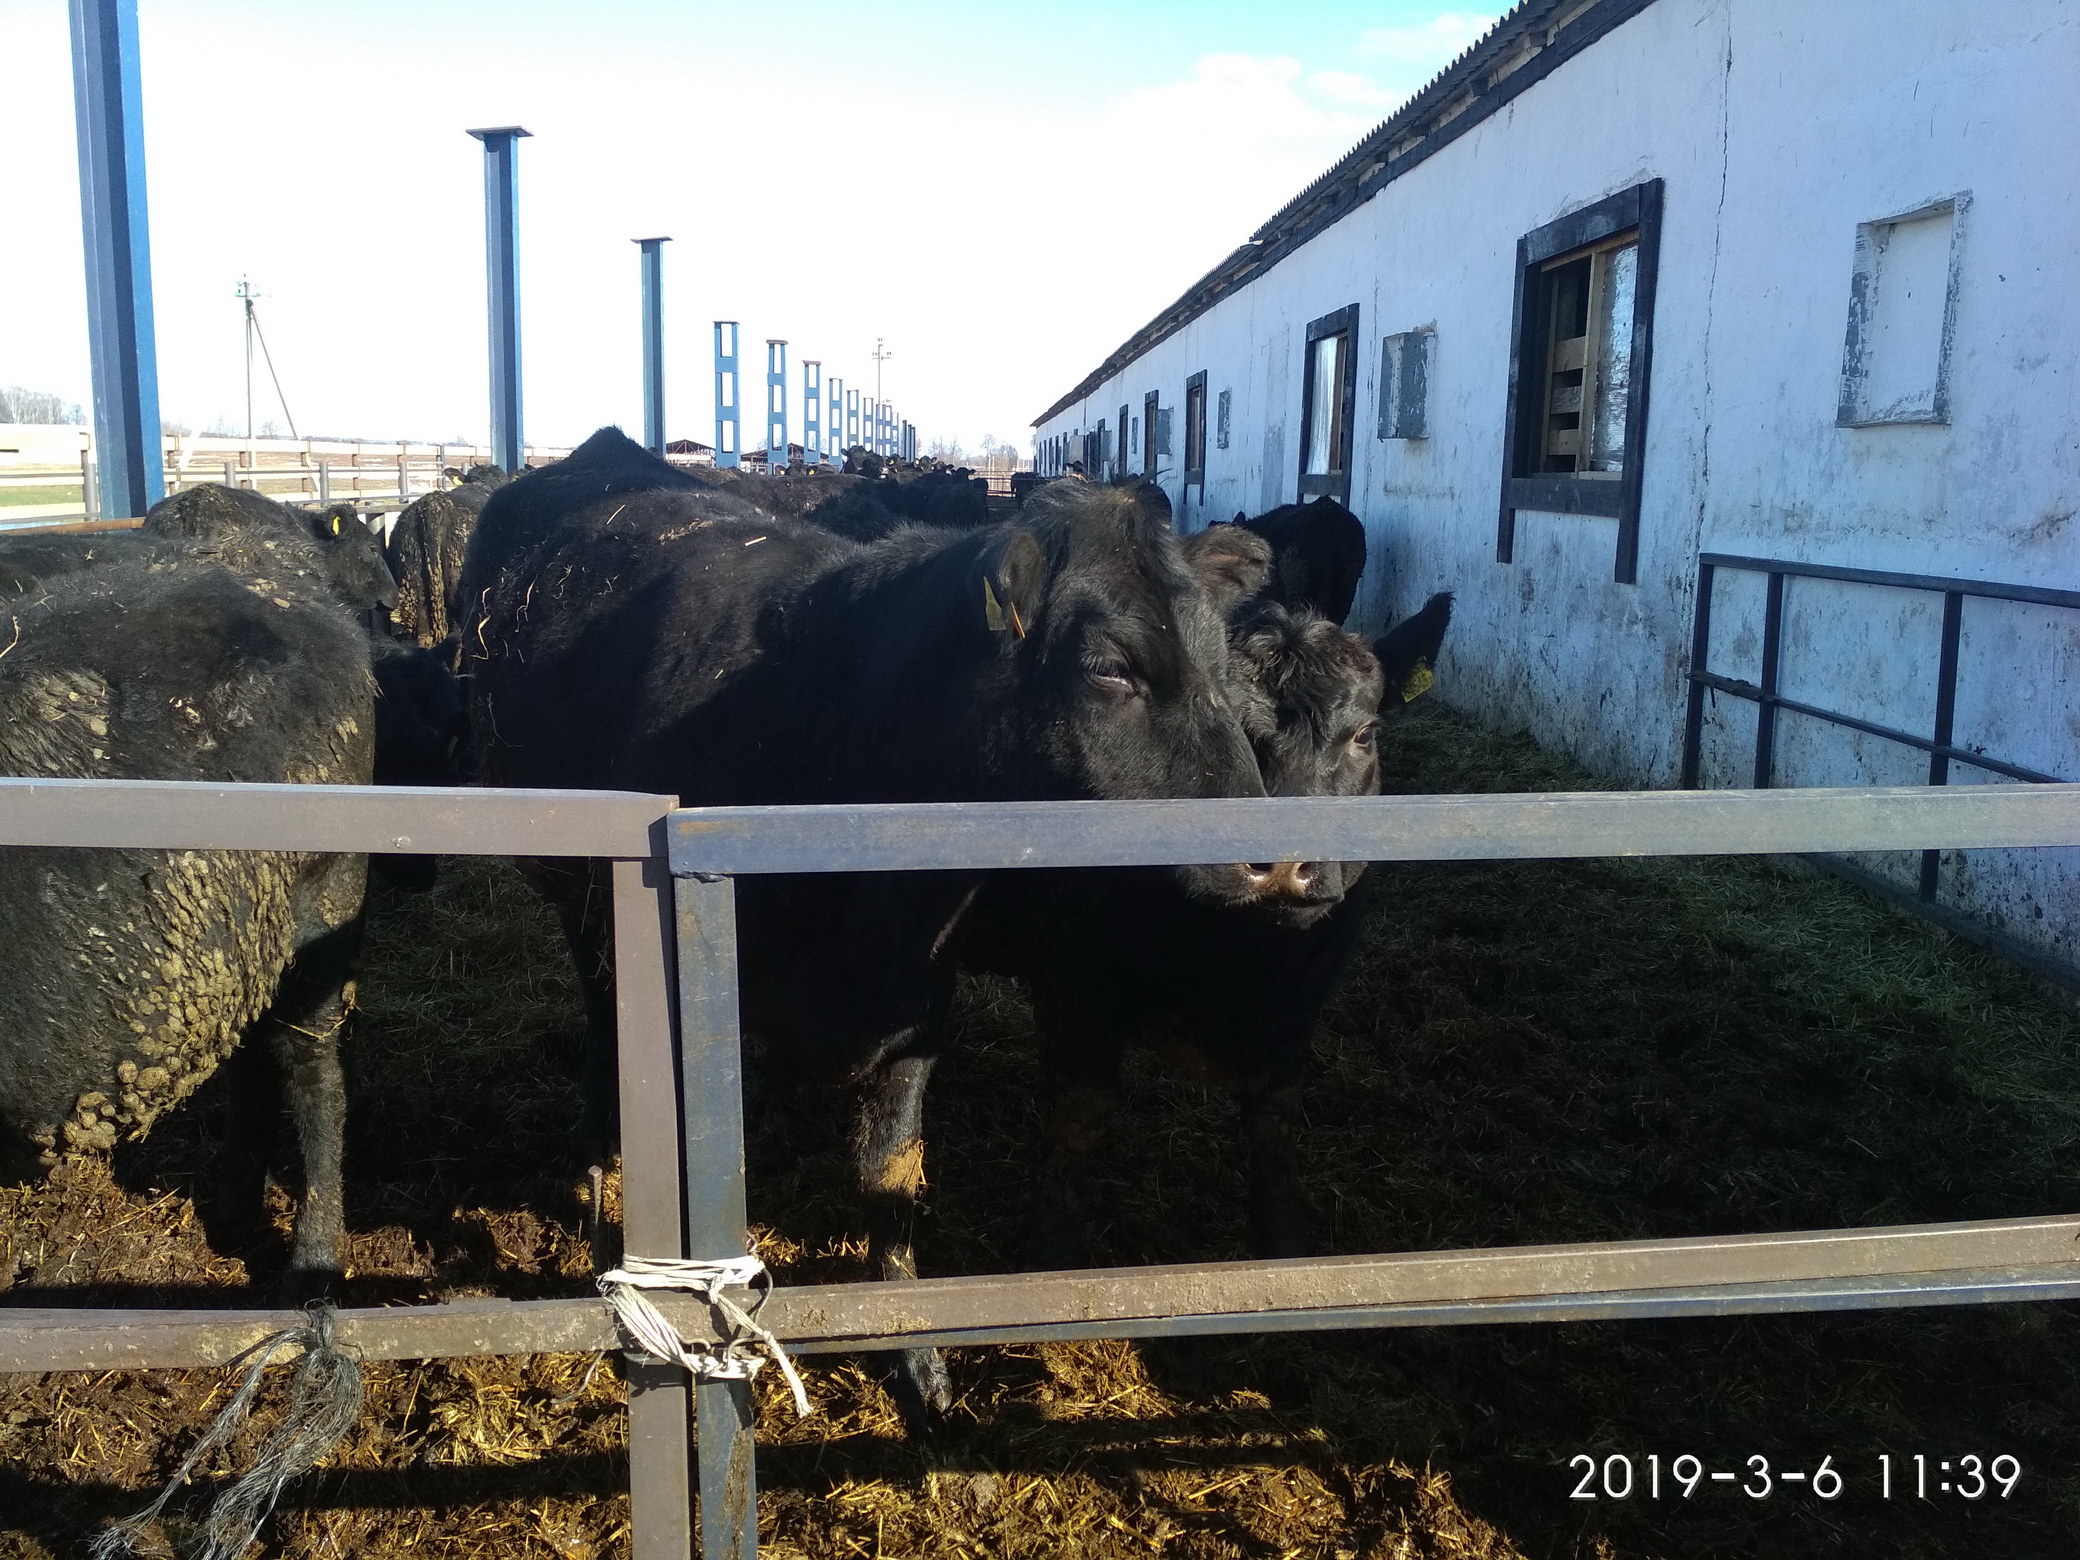 КГК Могилевской области подвел итоги контроля за ходом зимне-стойлового содержания скота в хозяйствах региона